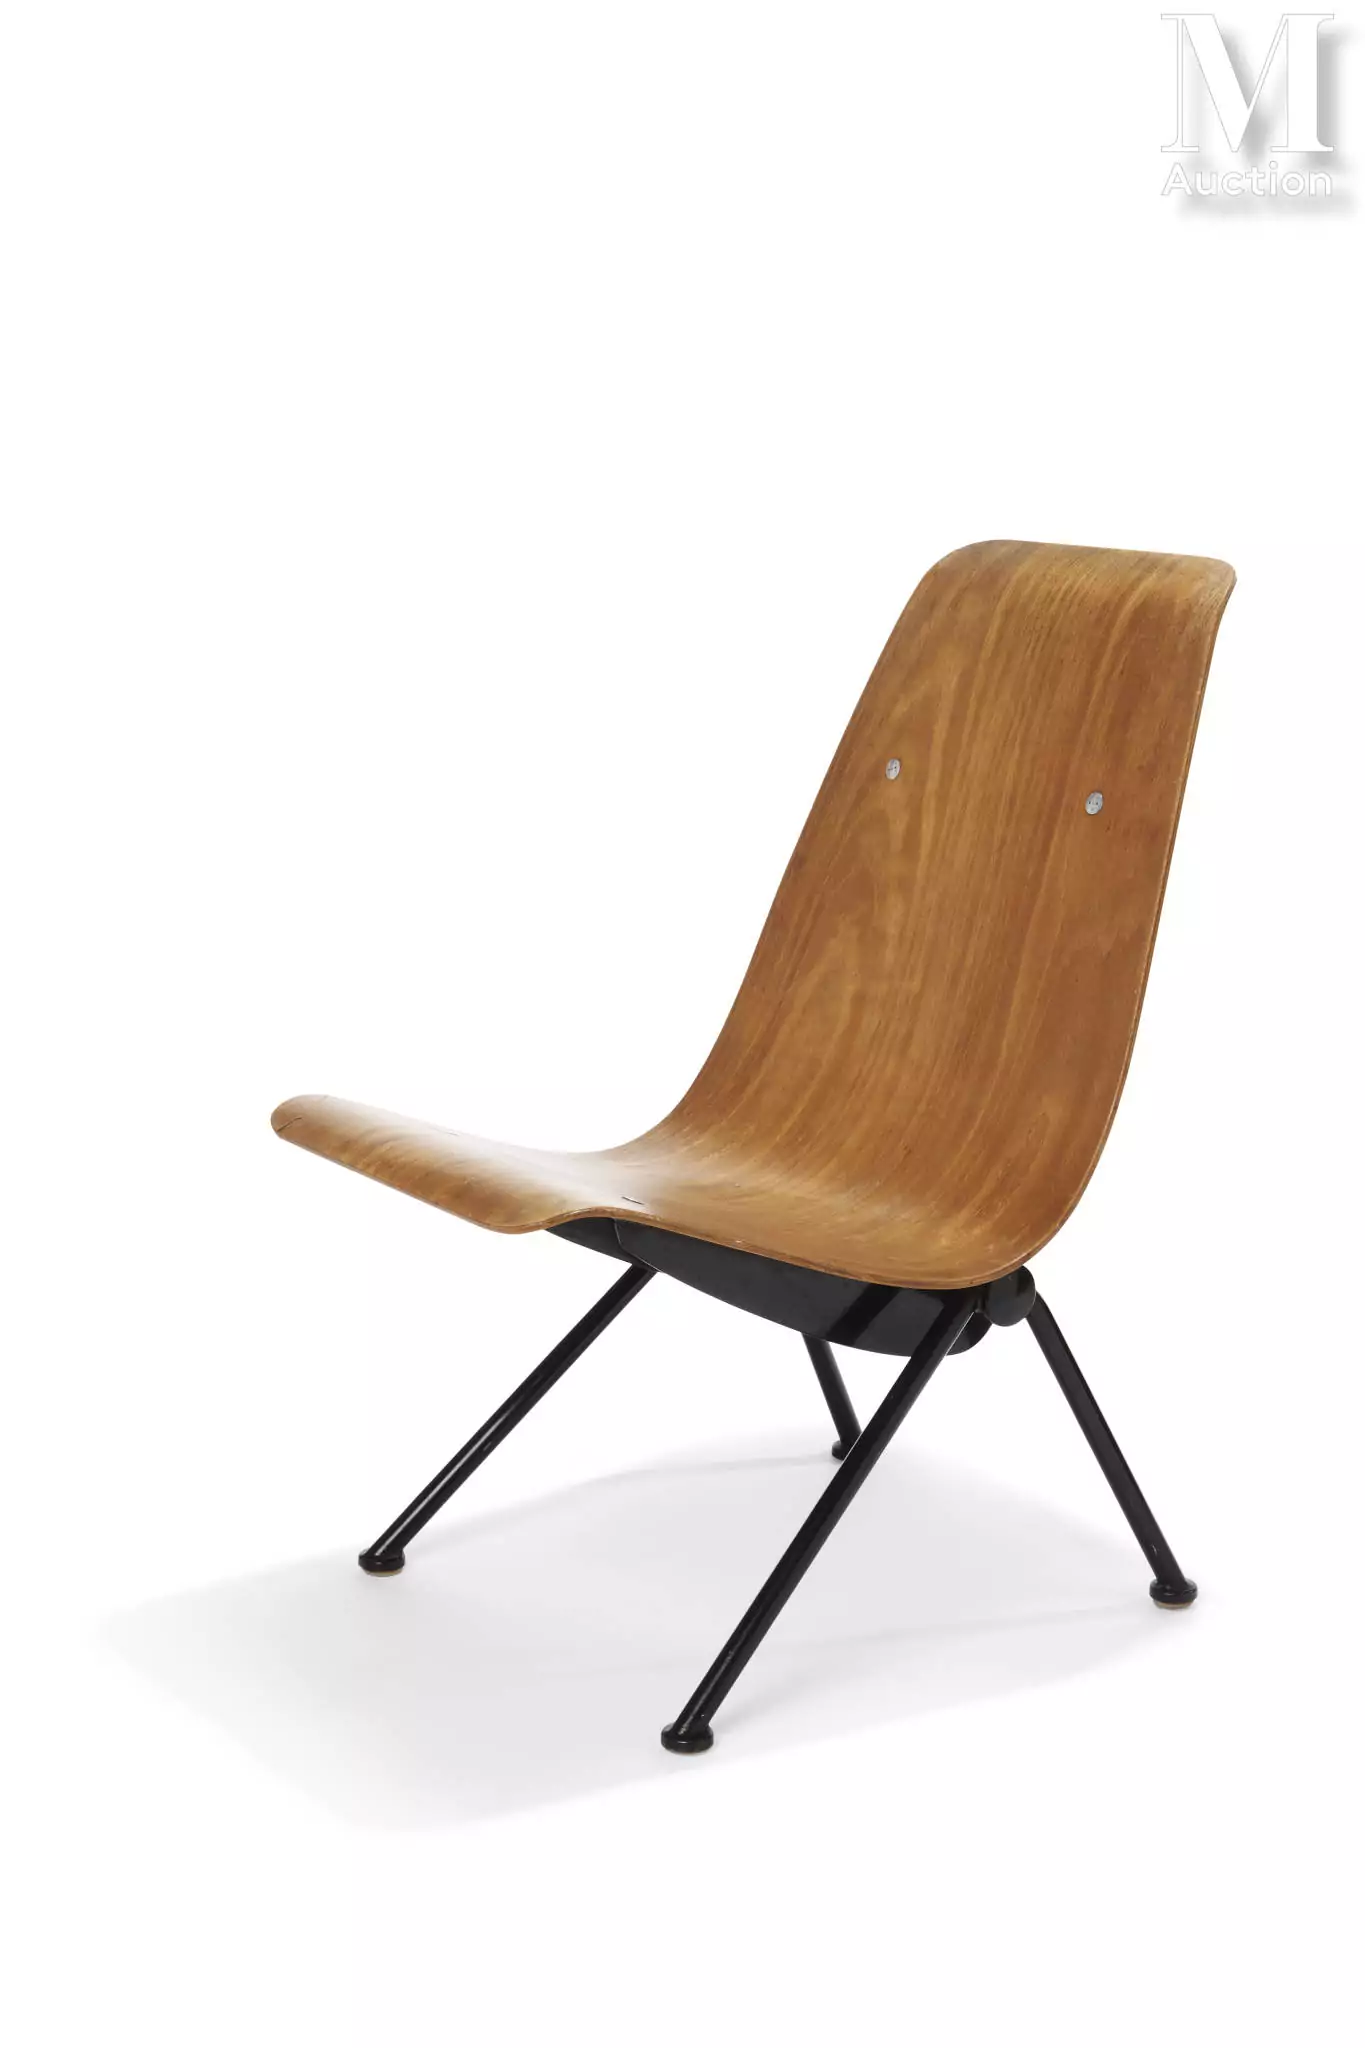 ean PROUVÉ (1901-1984) Chaise dite "Antony", fauteuil léger modèle 356 Circa 1956